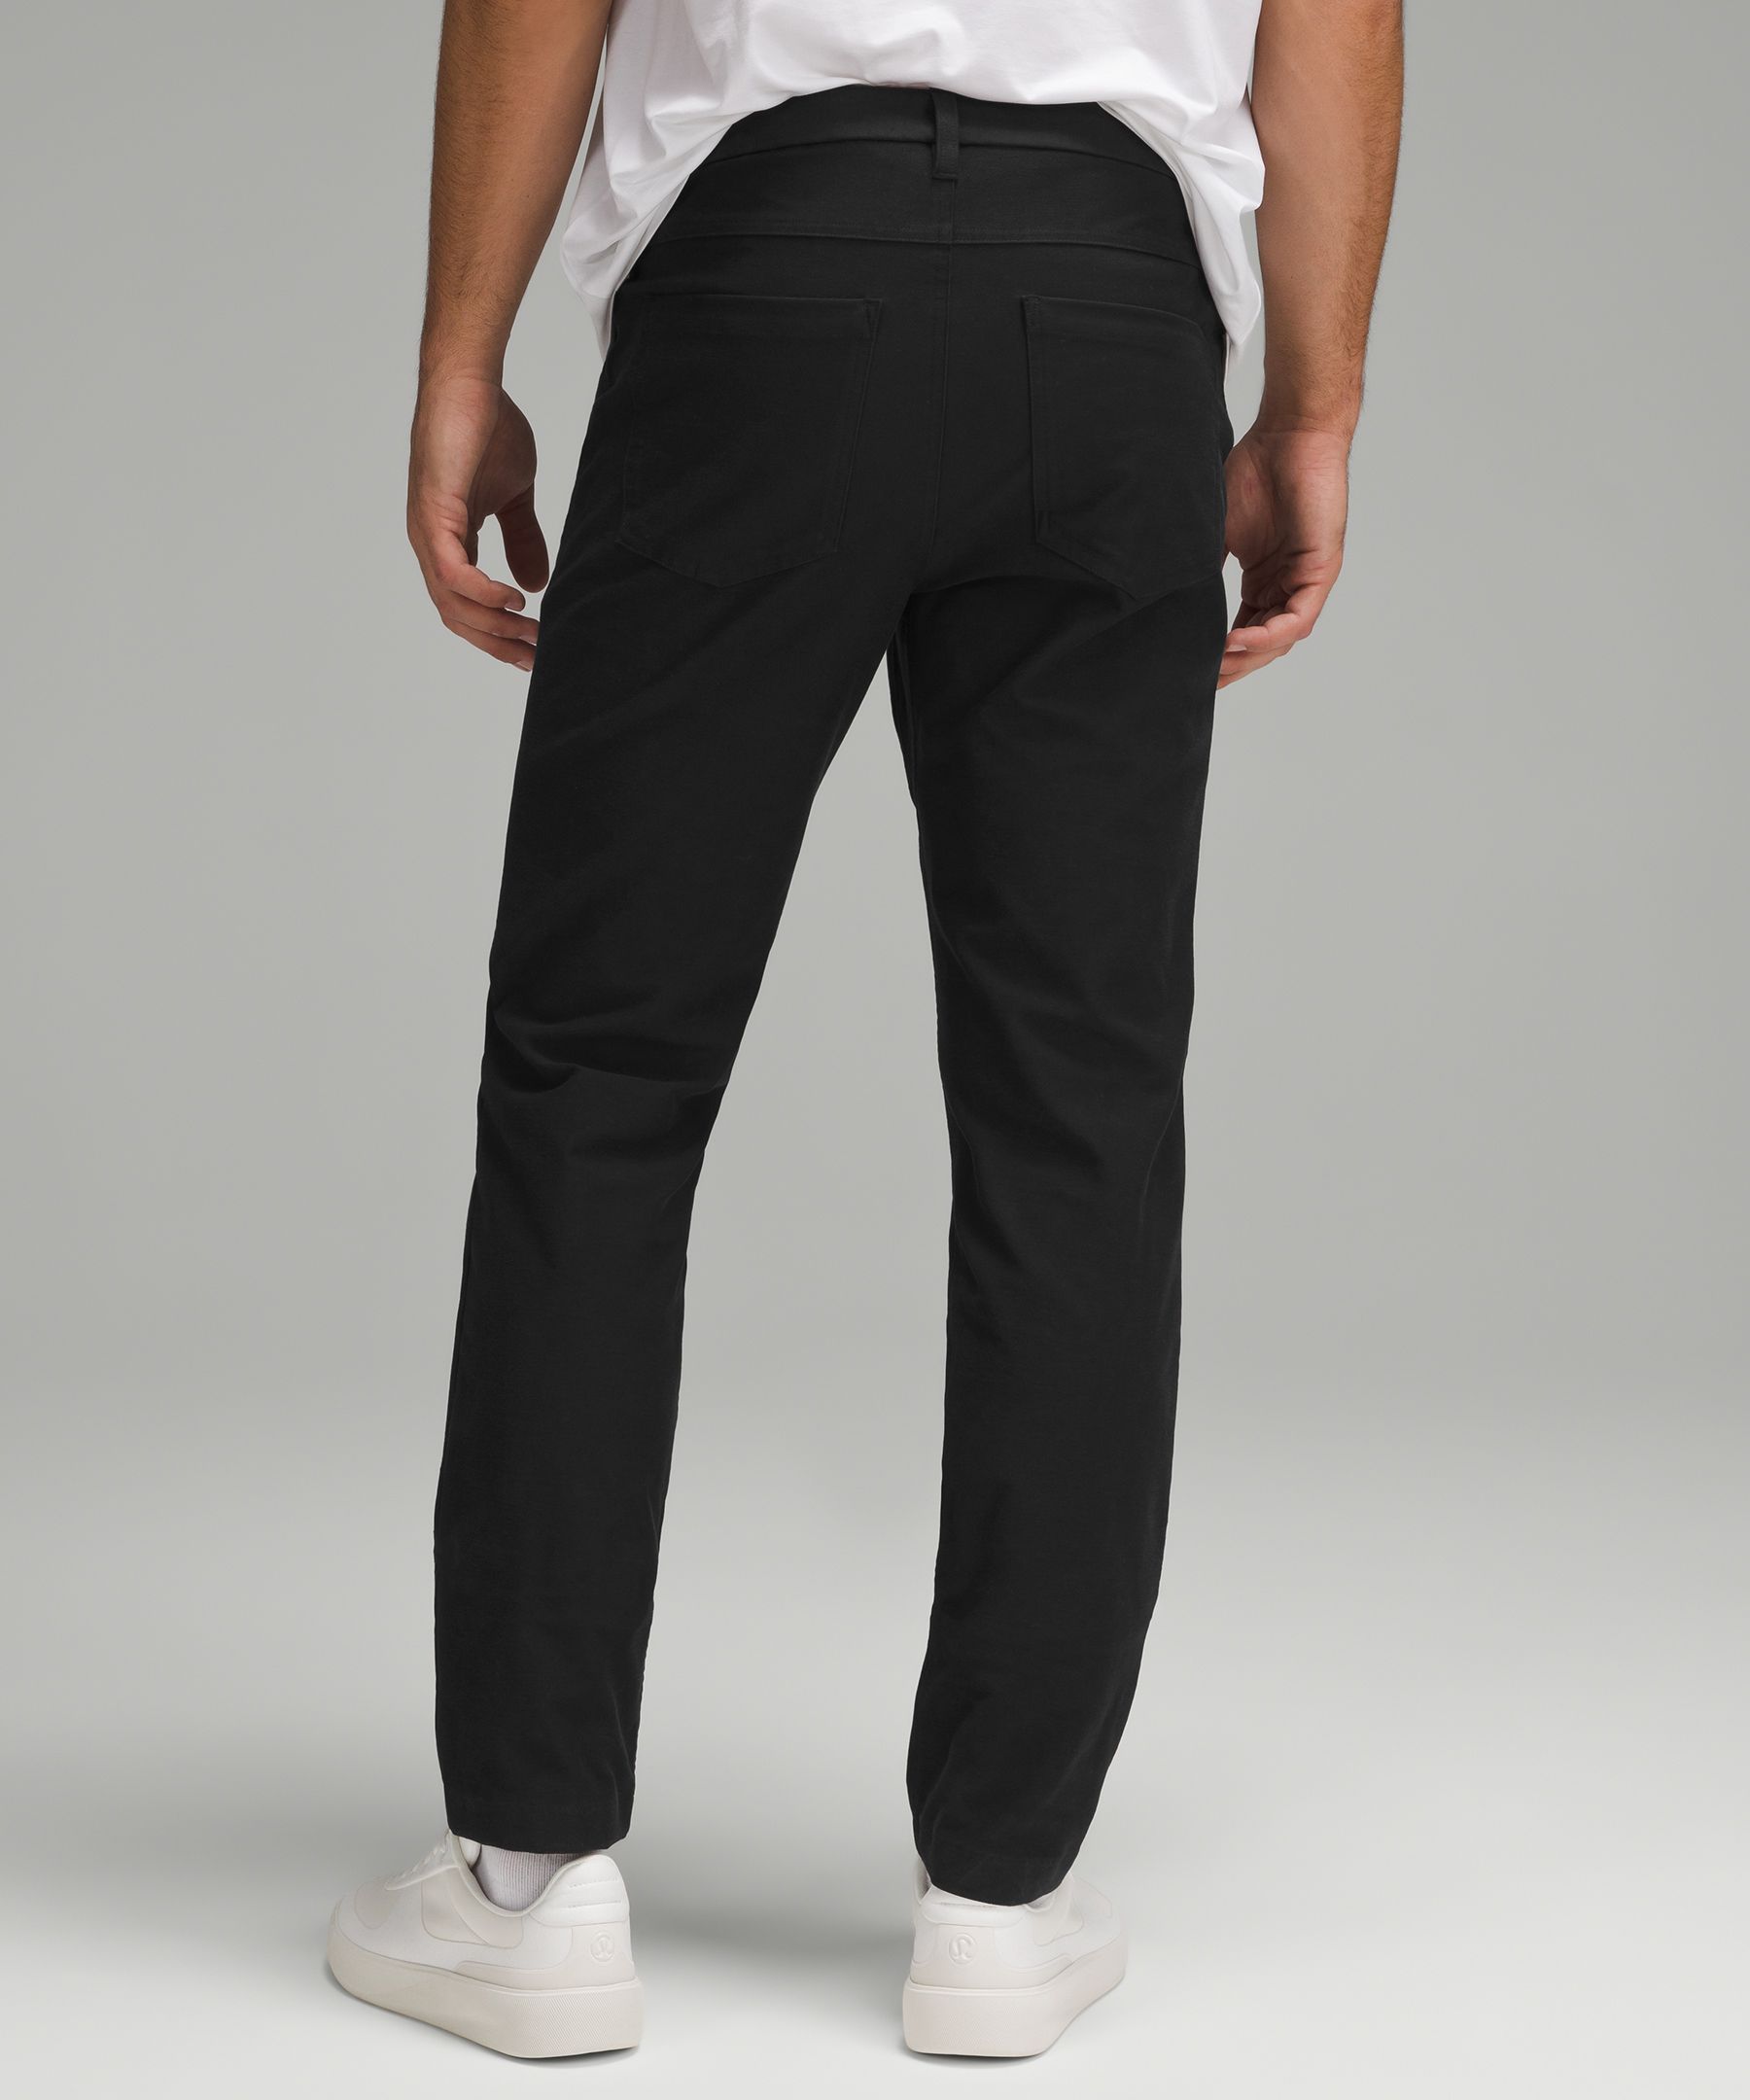 Lululemon athletica ABC Classic-Fit 5 Pocket Pant 34 *Utilitech, Men's  Trousers